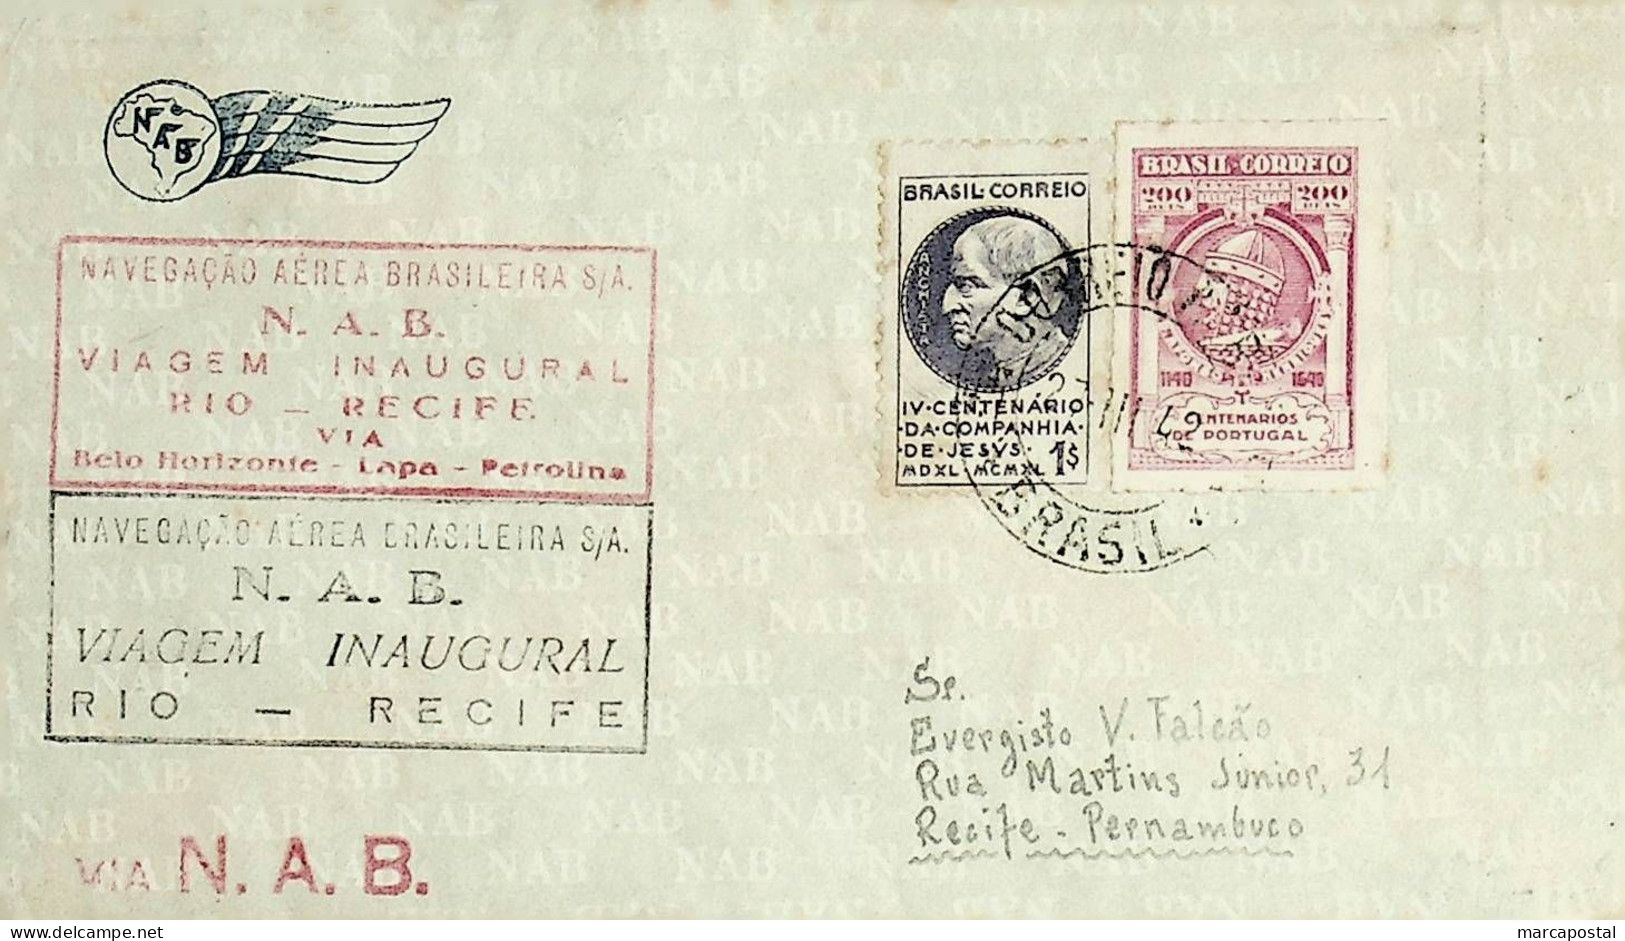 1942 Brasil / Brazil NAB 1.º Voo / First Flight Rio De Janeiro - Recife - Airmail